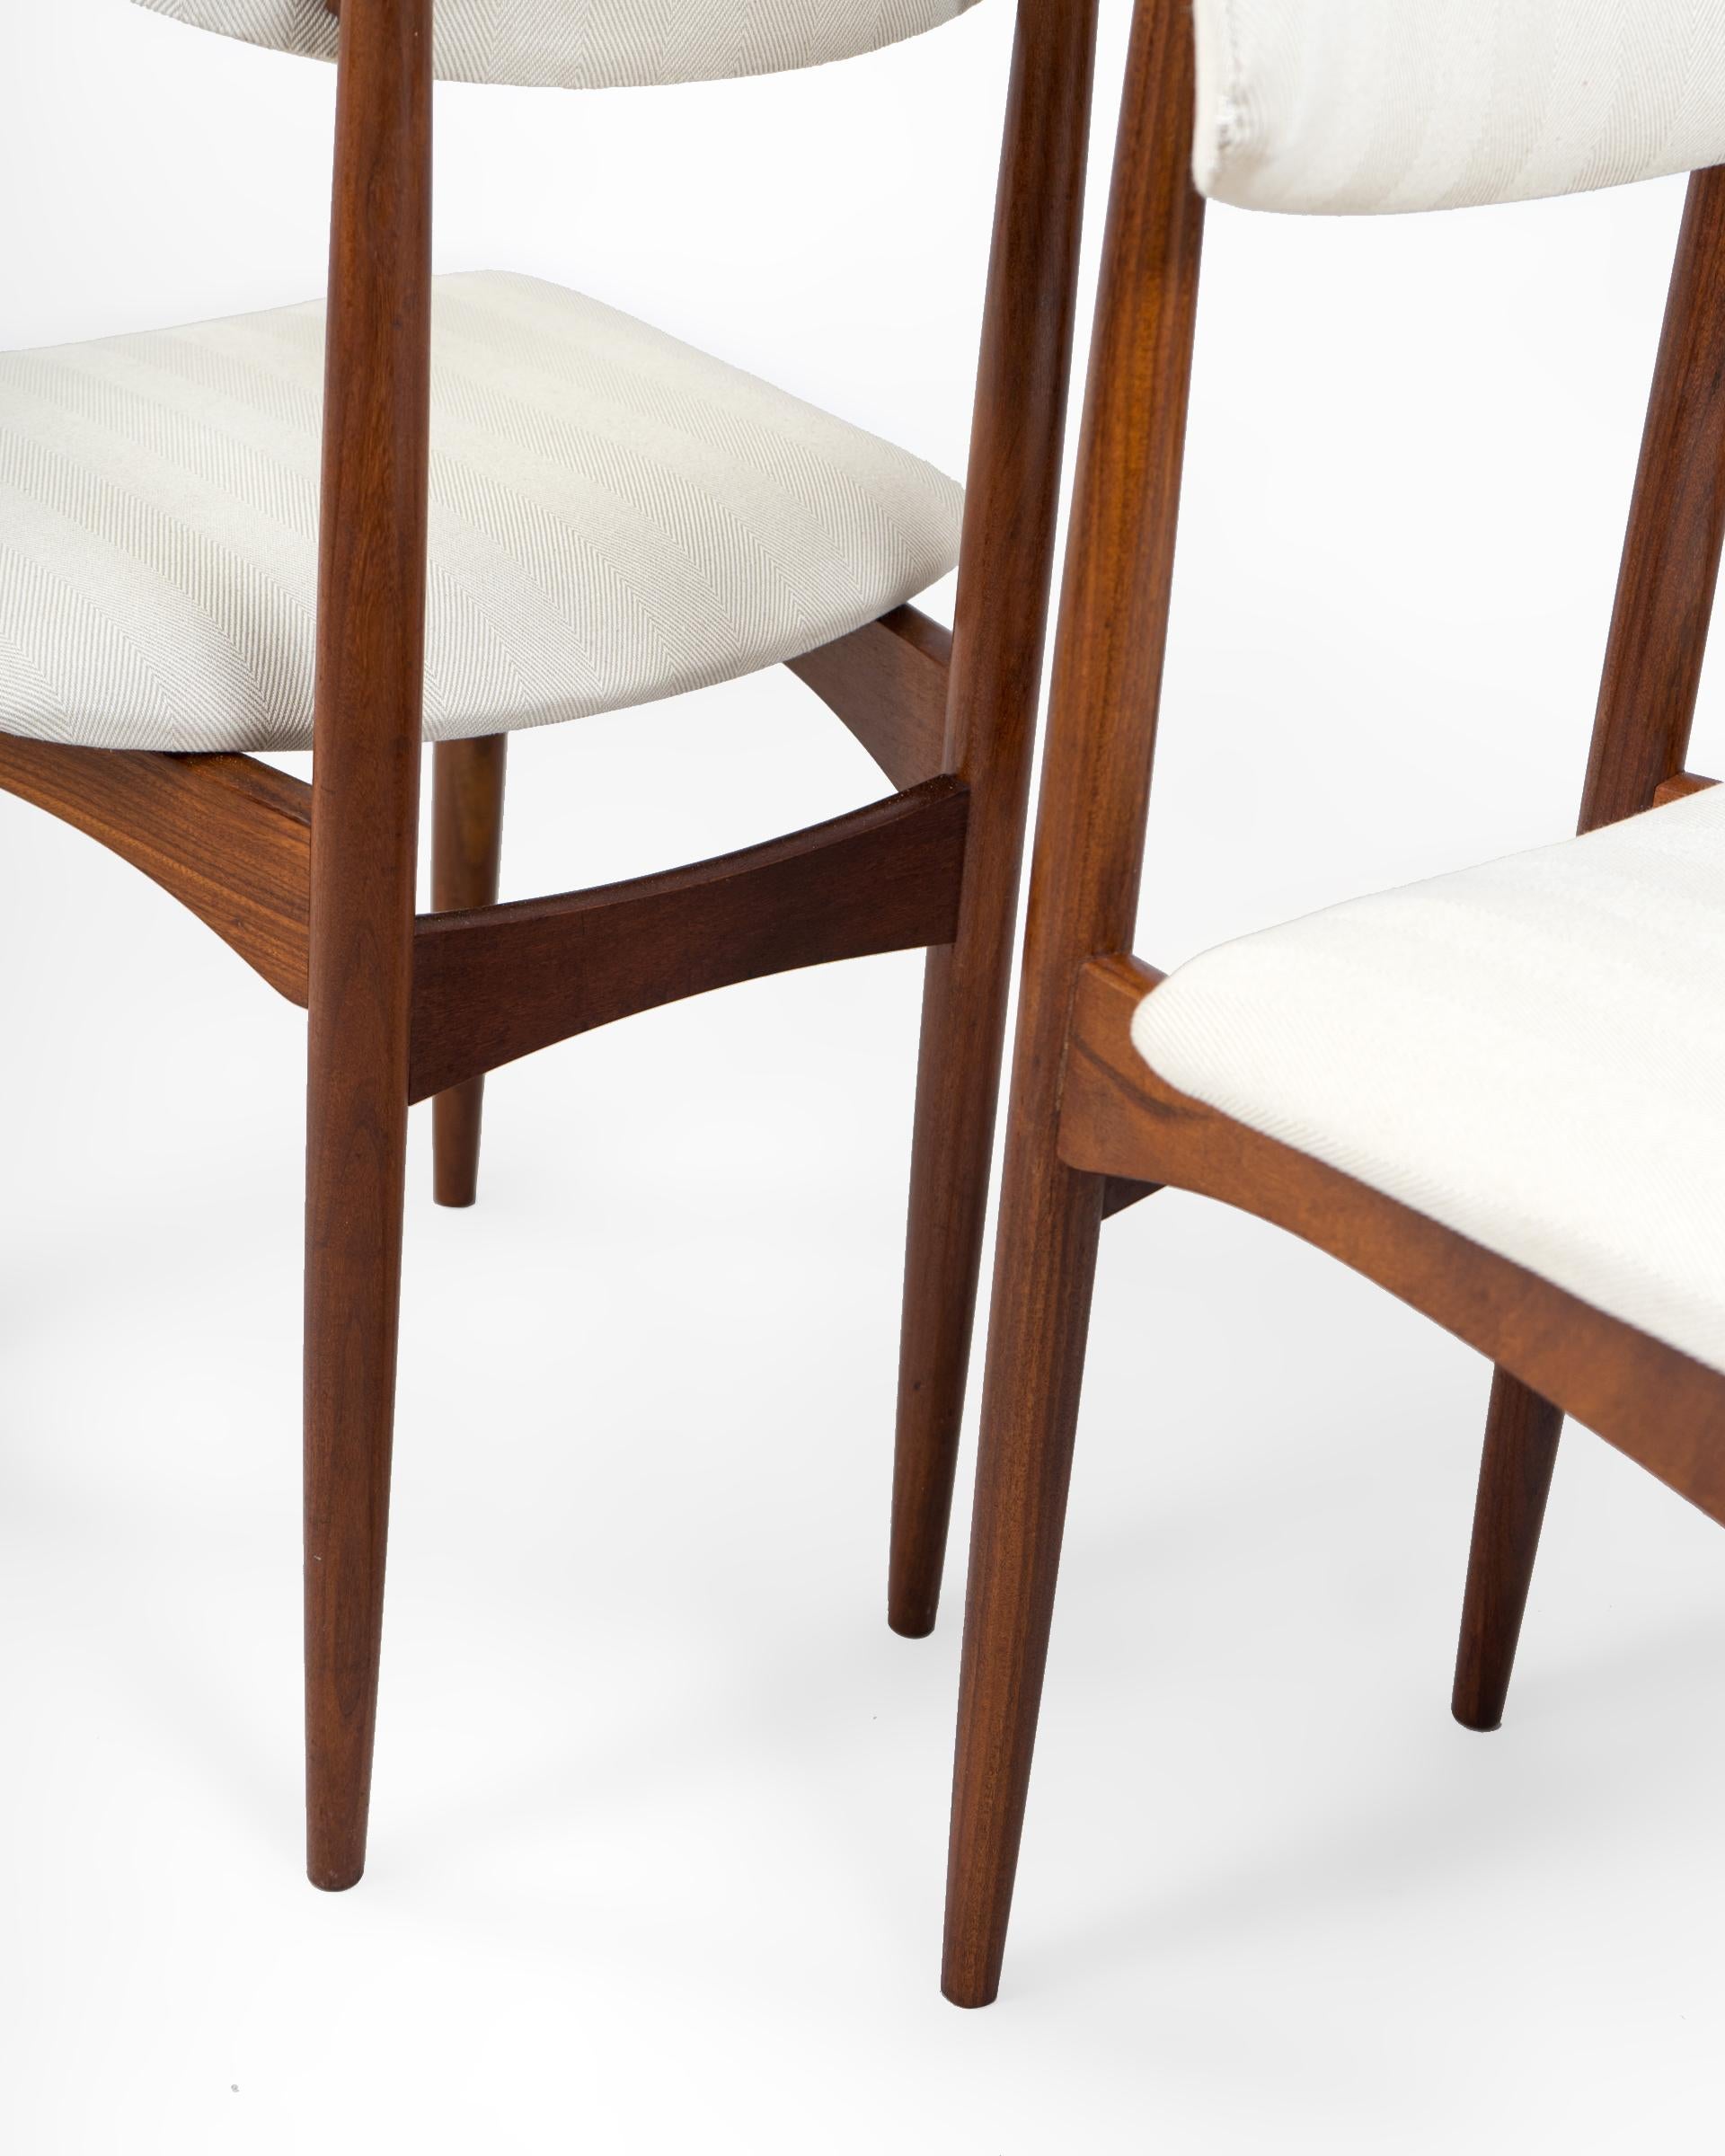 20th Century Set of 2 Danish Chairs Made of Teak, 1960, Denmark